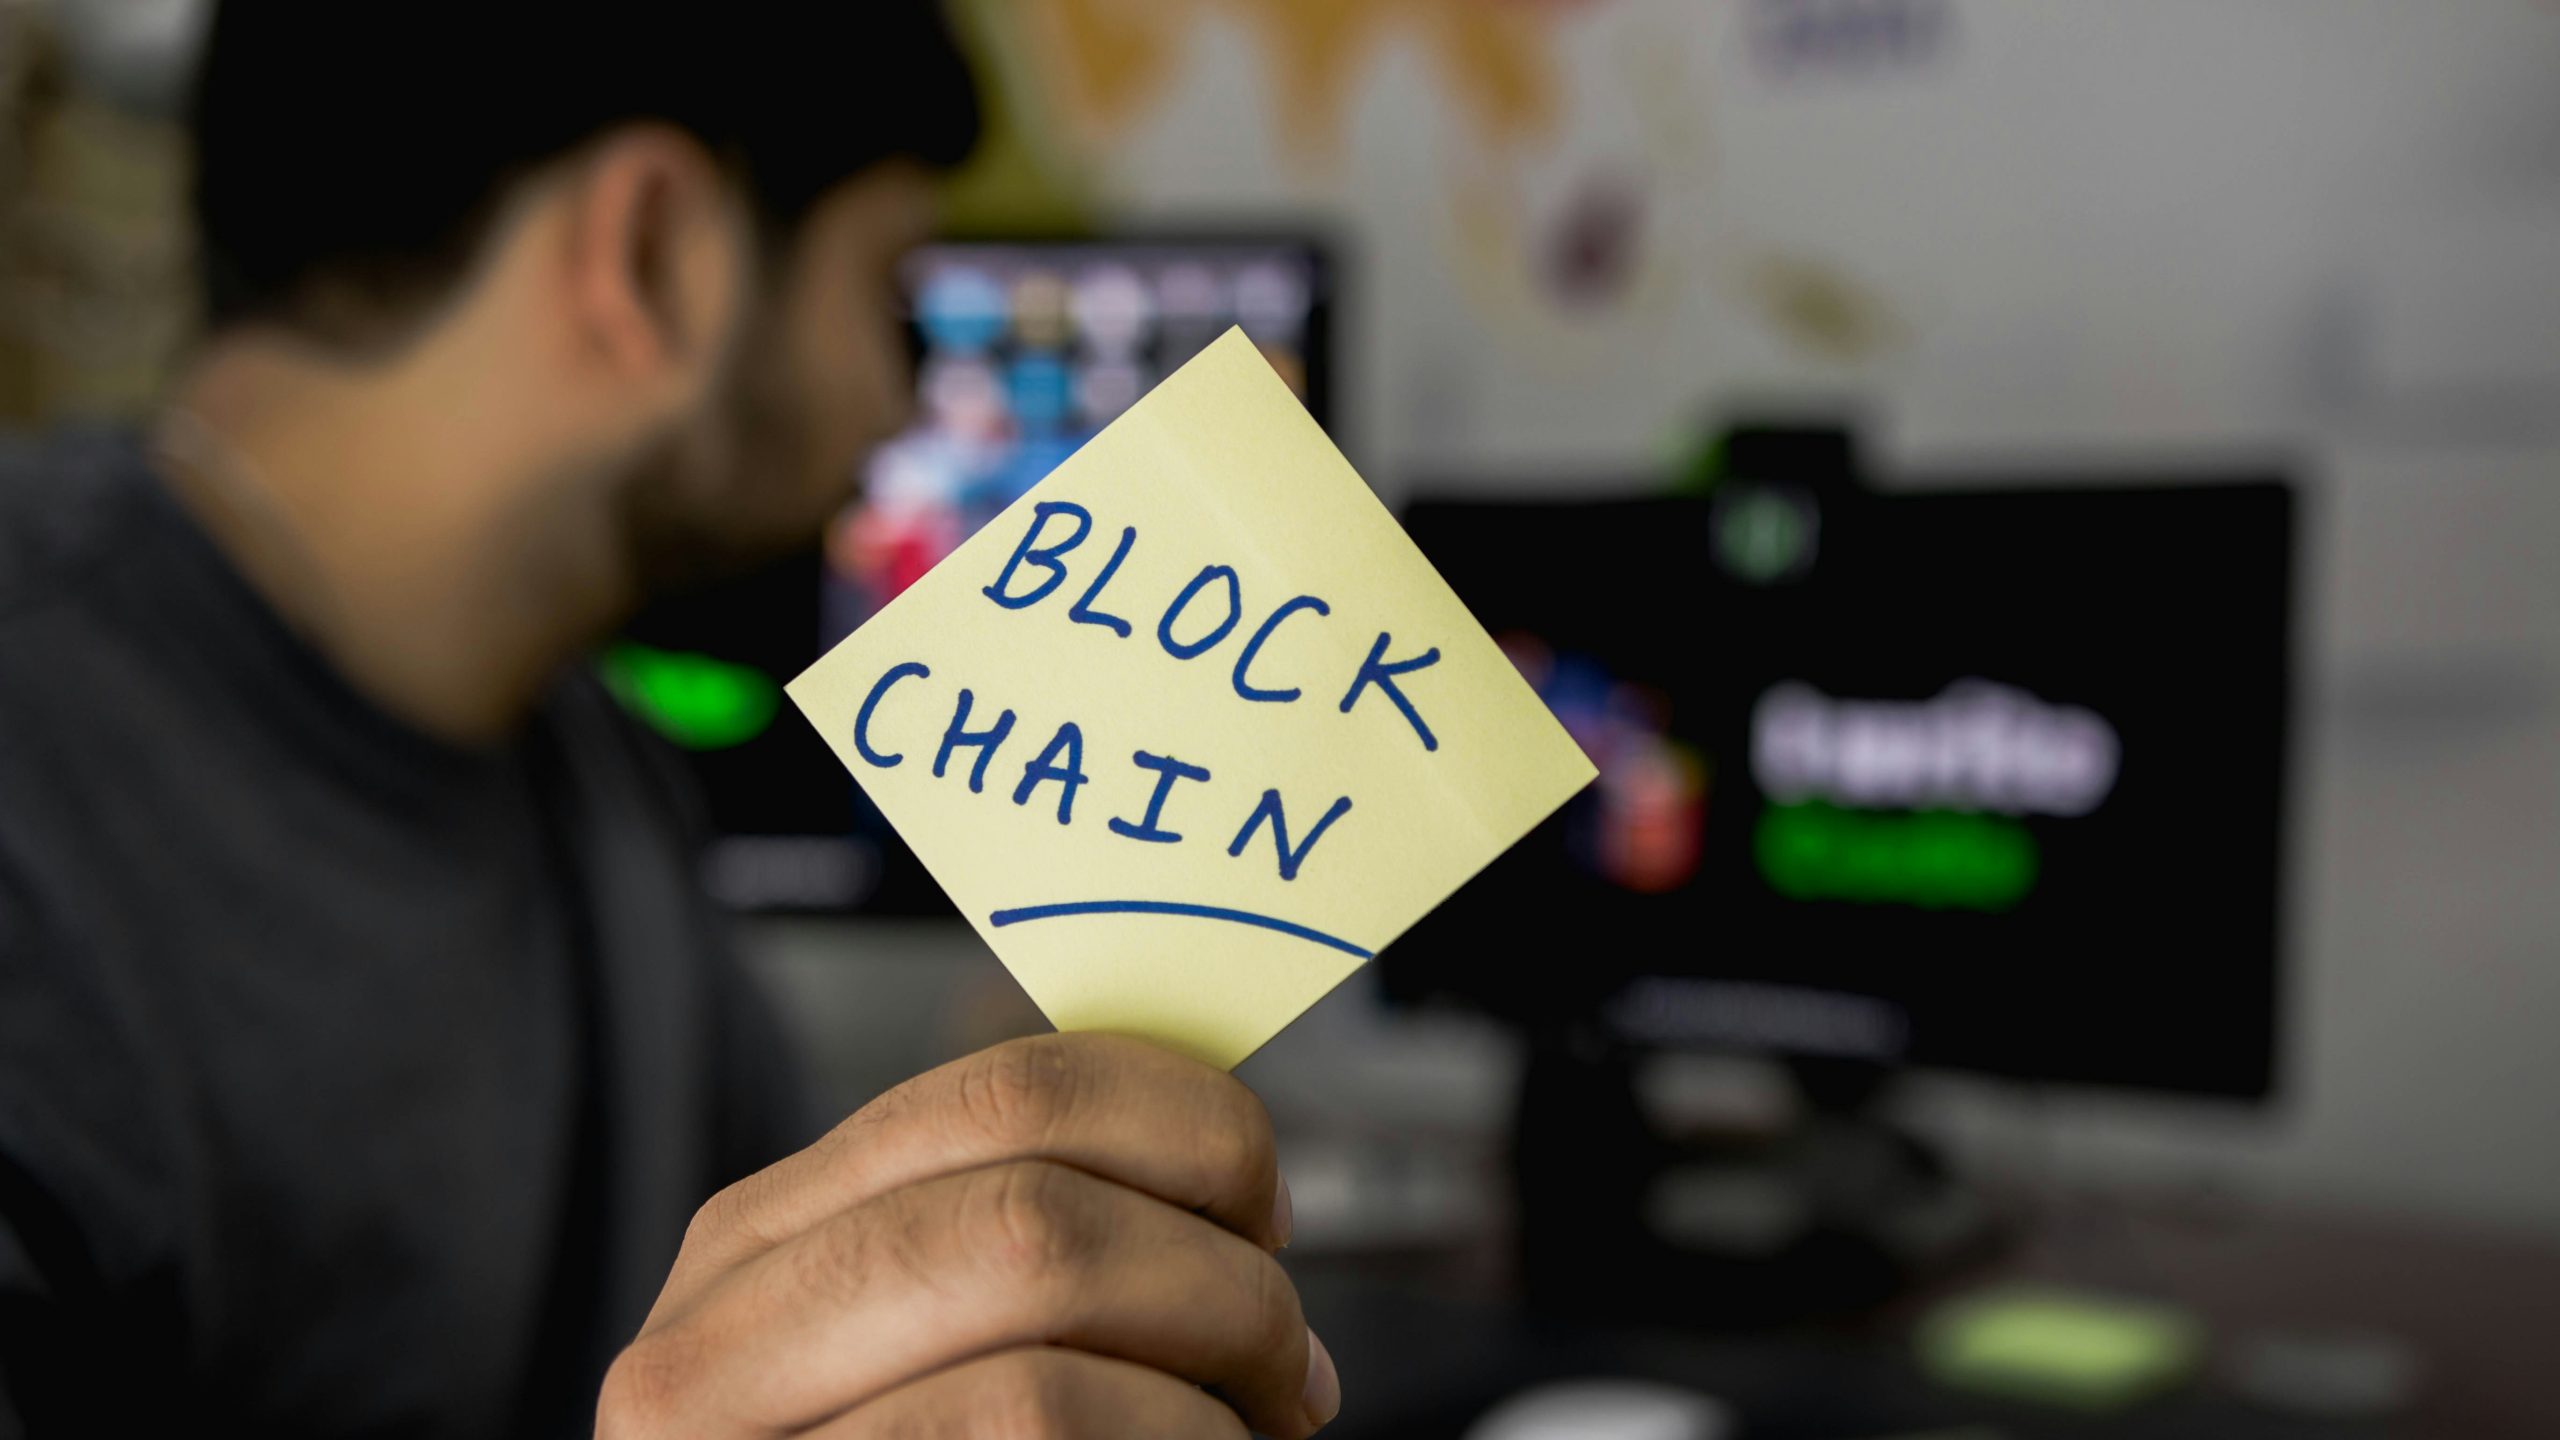 El Blockchain revoluciona la industria con sus aplicaciones innovadoras con total seguridad y transparencia